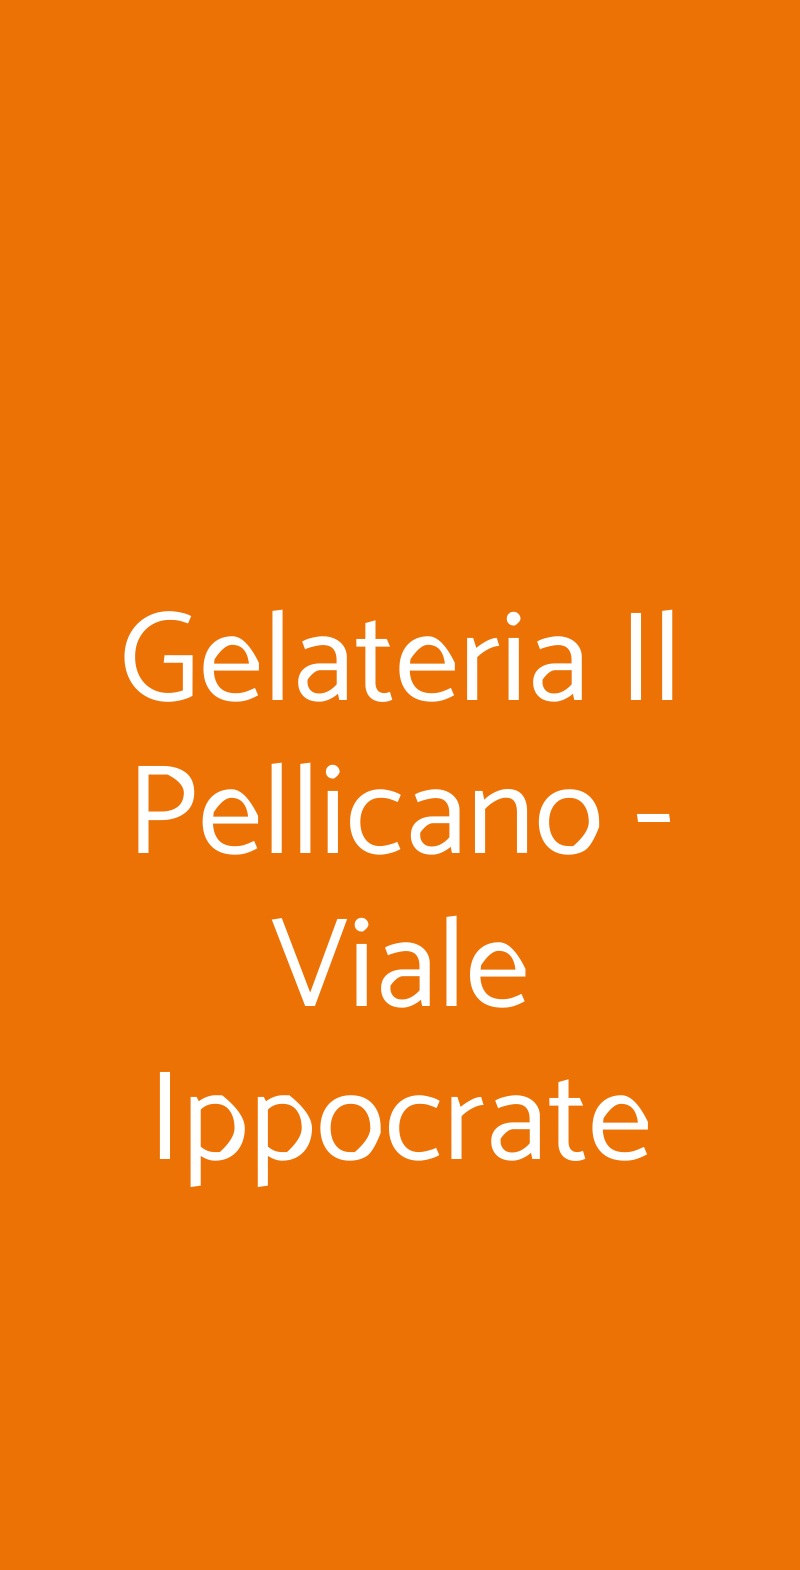 Gelateria Il Pellicano - Viale Ippocrate Roma menù 1 pagina